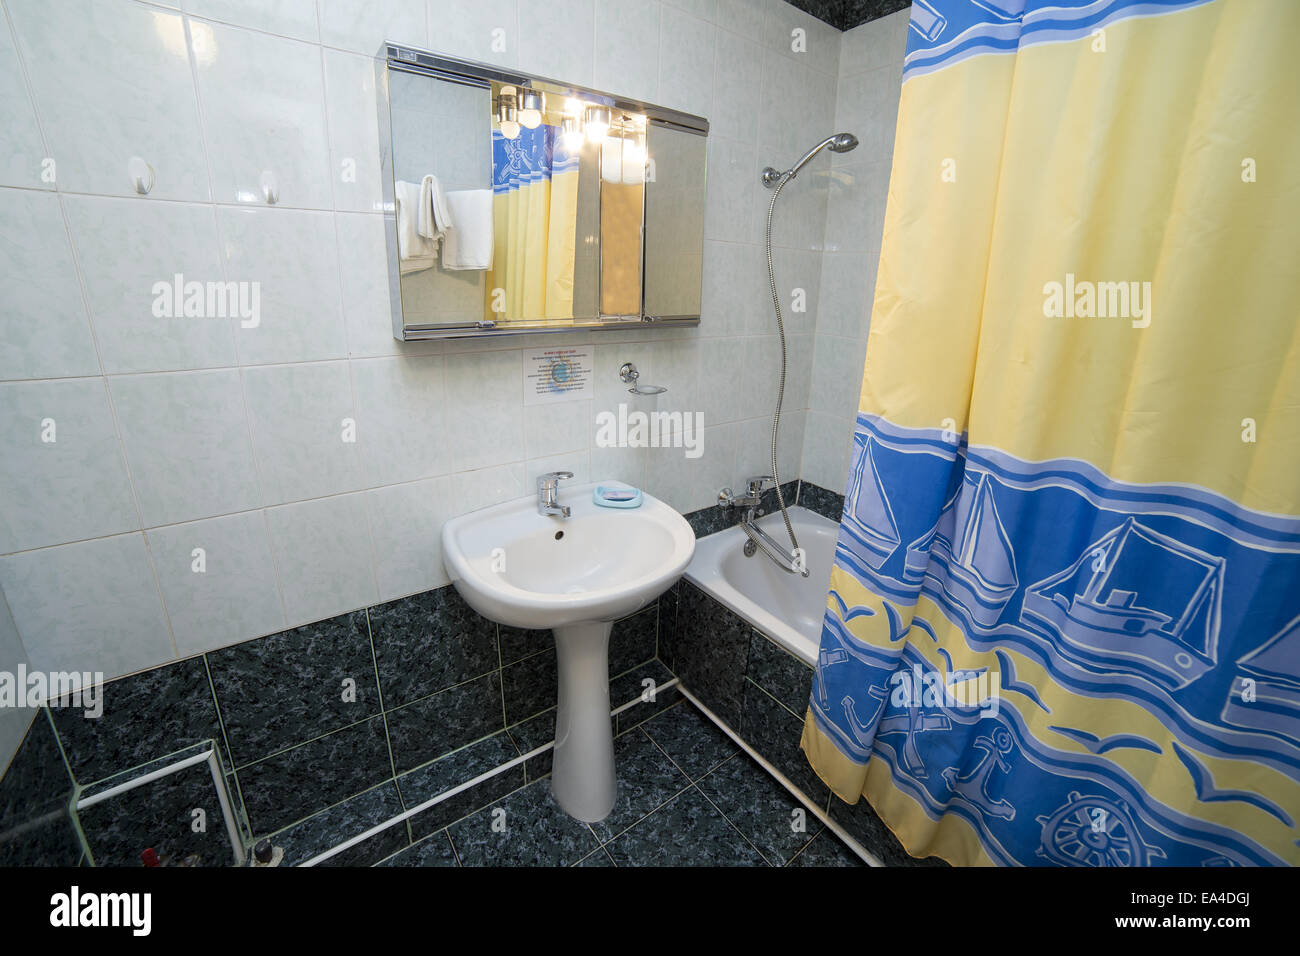 Salle de bains, WC, toilettes, wc prix interior design Banque D'Images